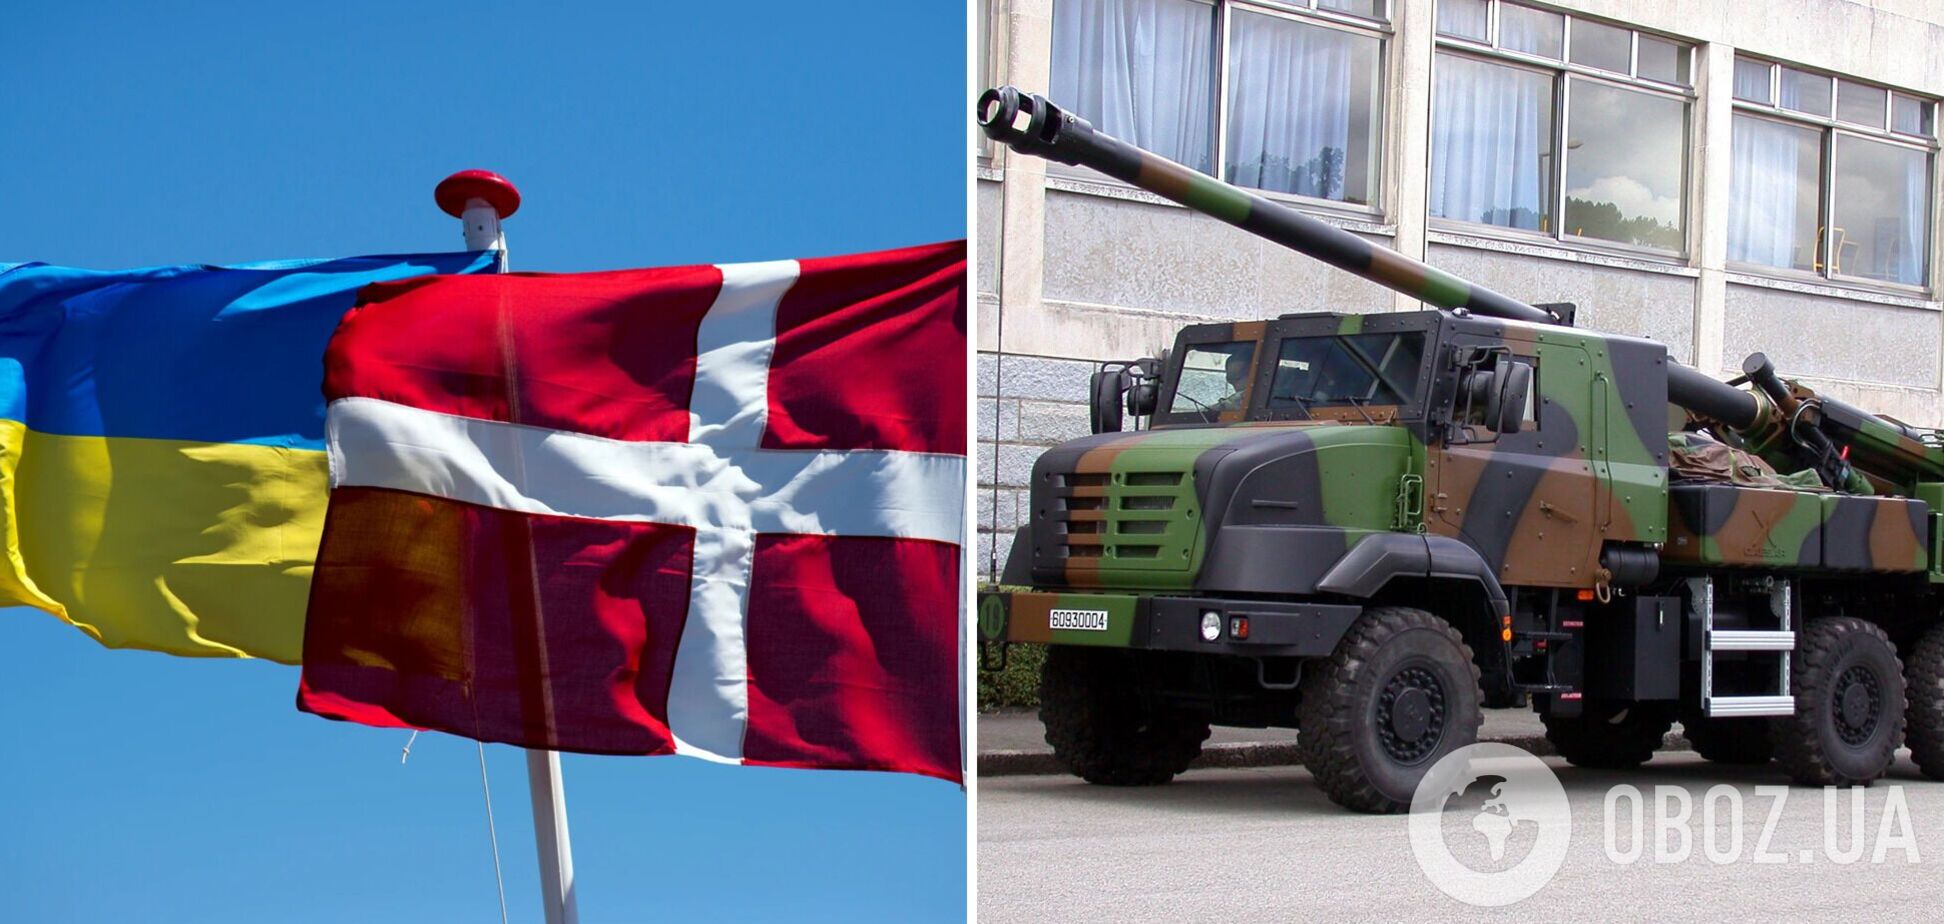 Дания отправит Украине все свои 19 гаубиц CAESAR, – министр обороны